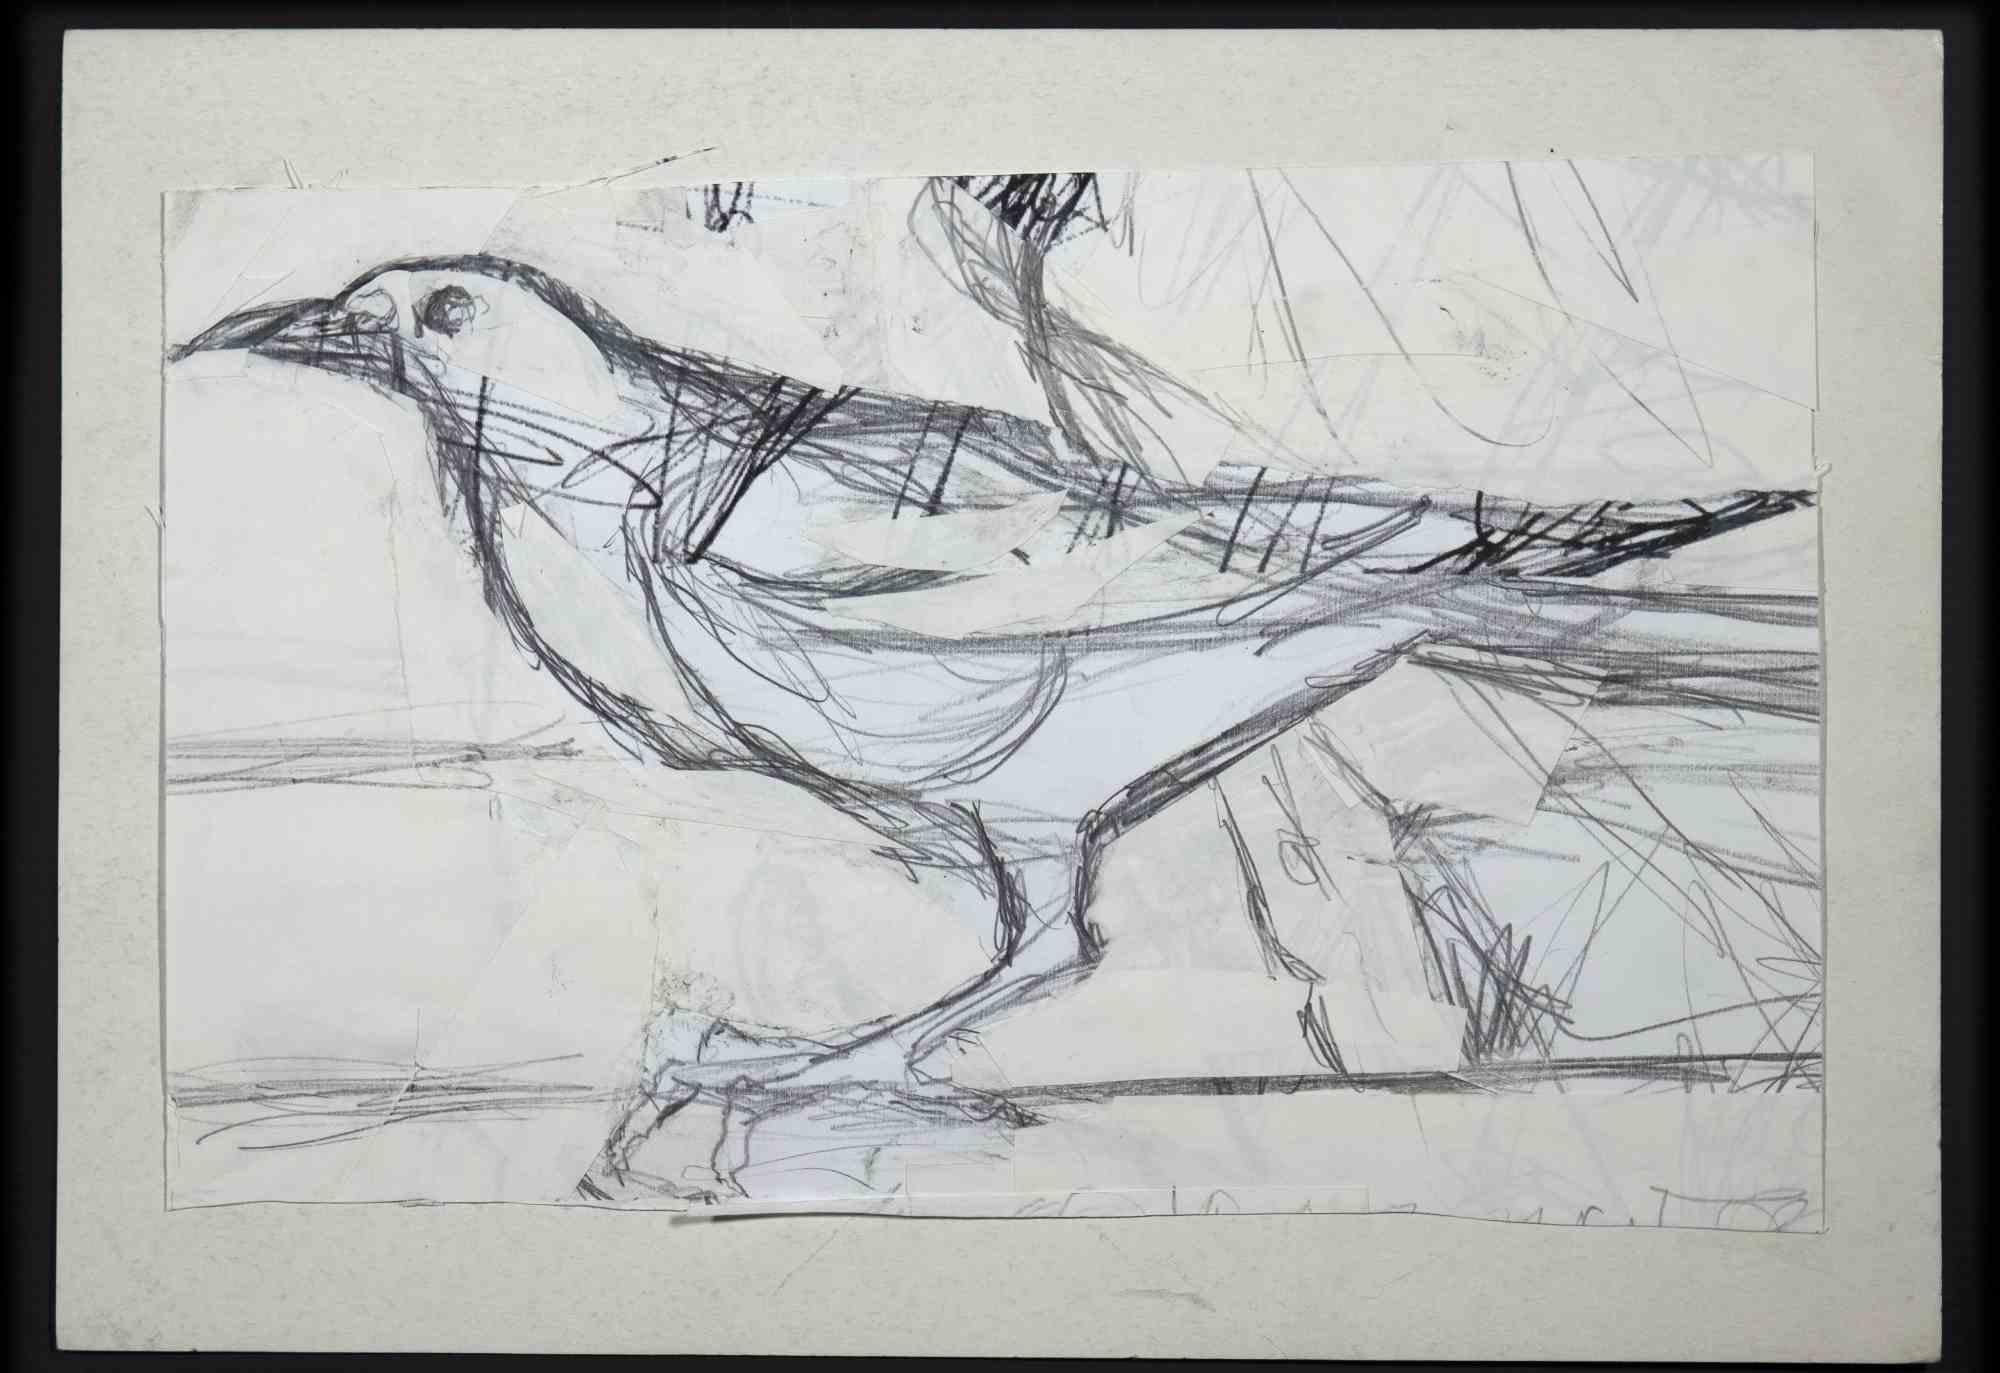 Vogel ist eine Original-Bleistiftzeichnung von Leo Guida aus dem 20. Jahrhundert.

Guter Zustand bis auf einige Stockflecken.

Das Kunstwerk wird mit kräftigen Strichen in einer ausgewogenen Komposition dargestellt.